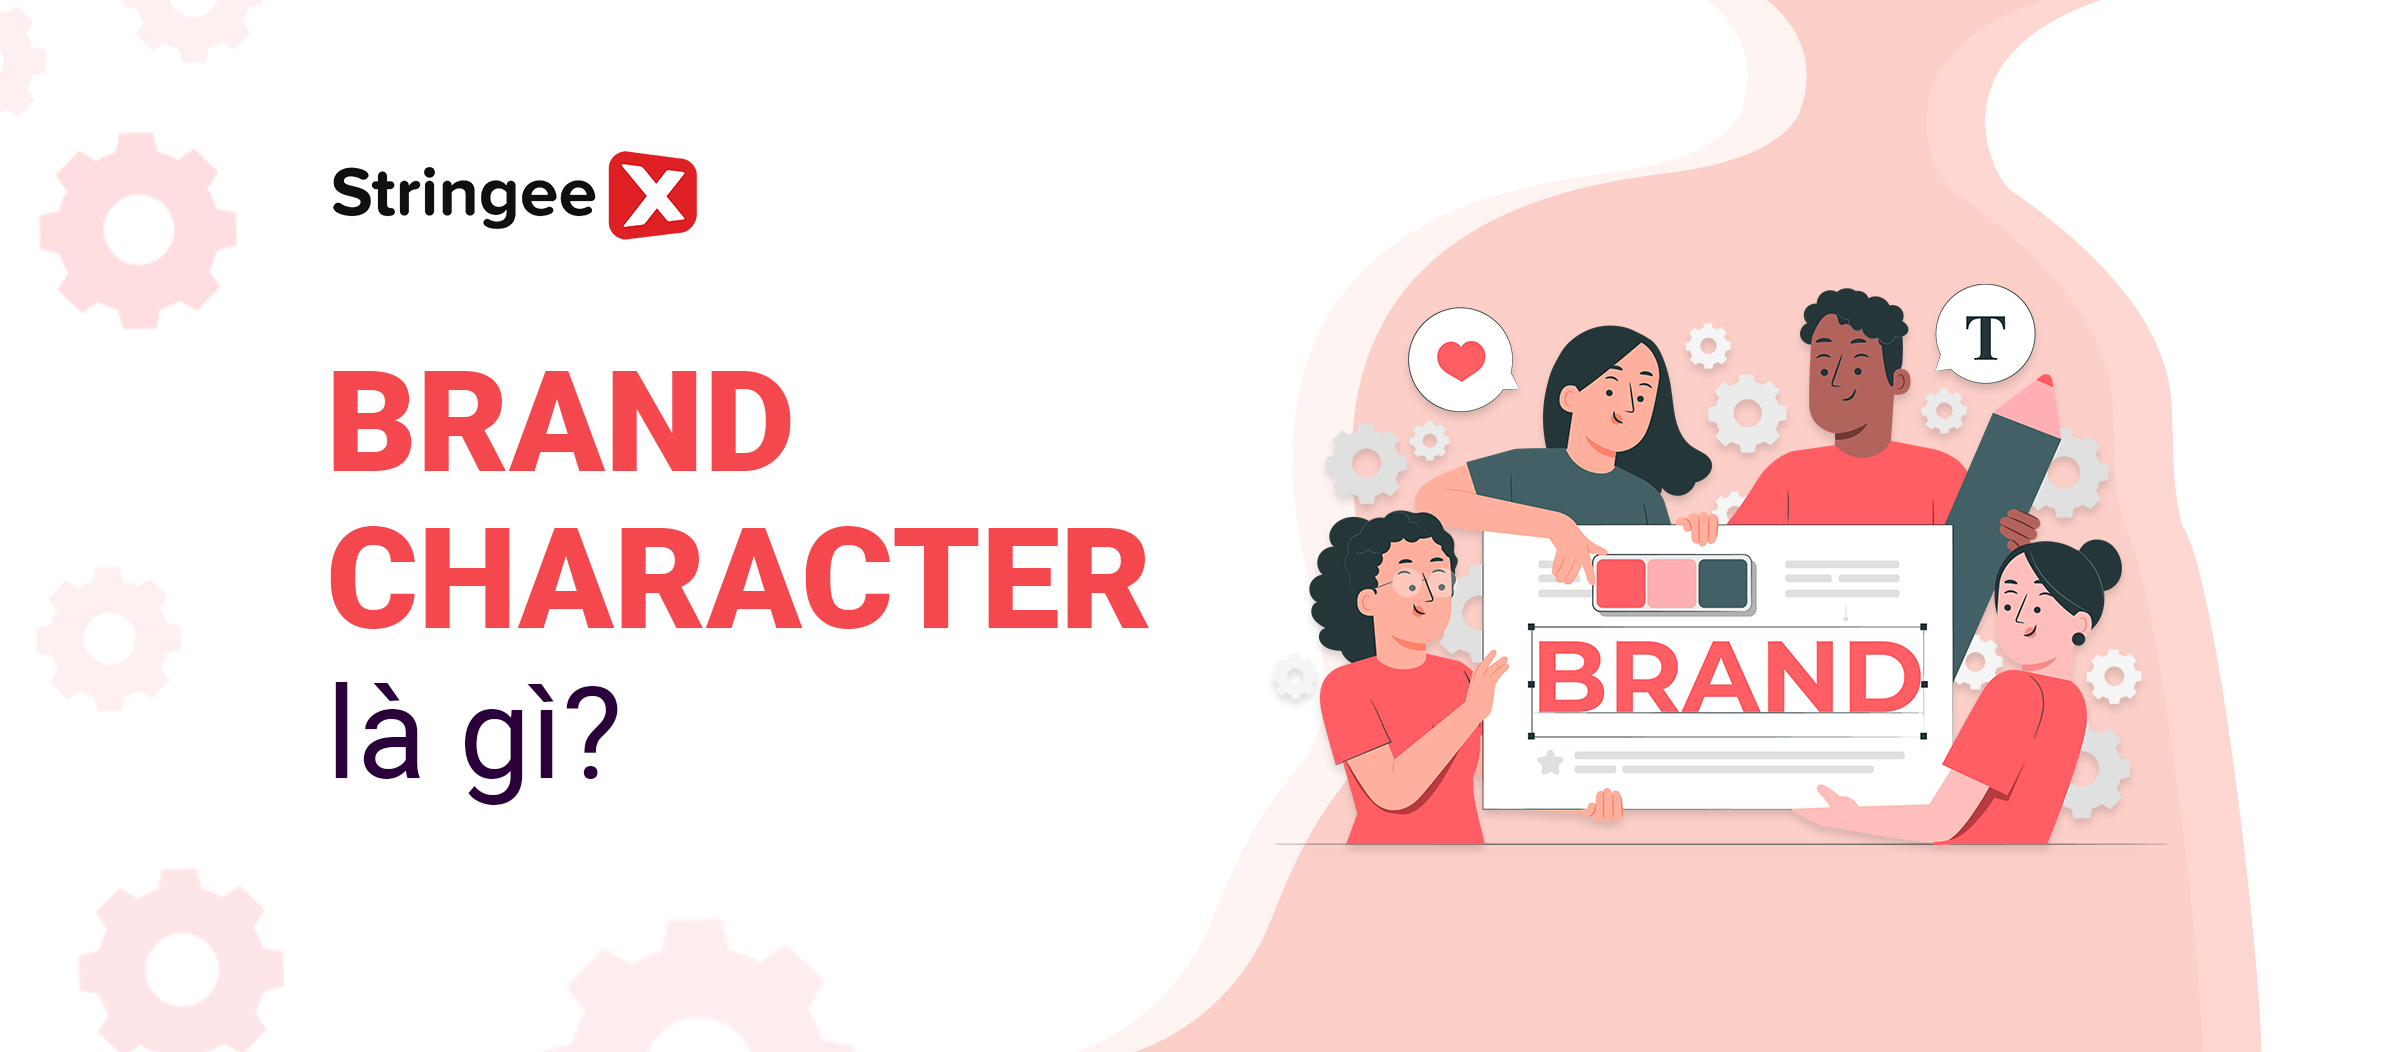 Brand character là gì? Cách xây dựng nhân vật đại diện thương hiệu ấn tượng